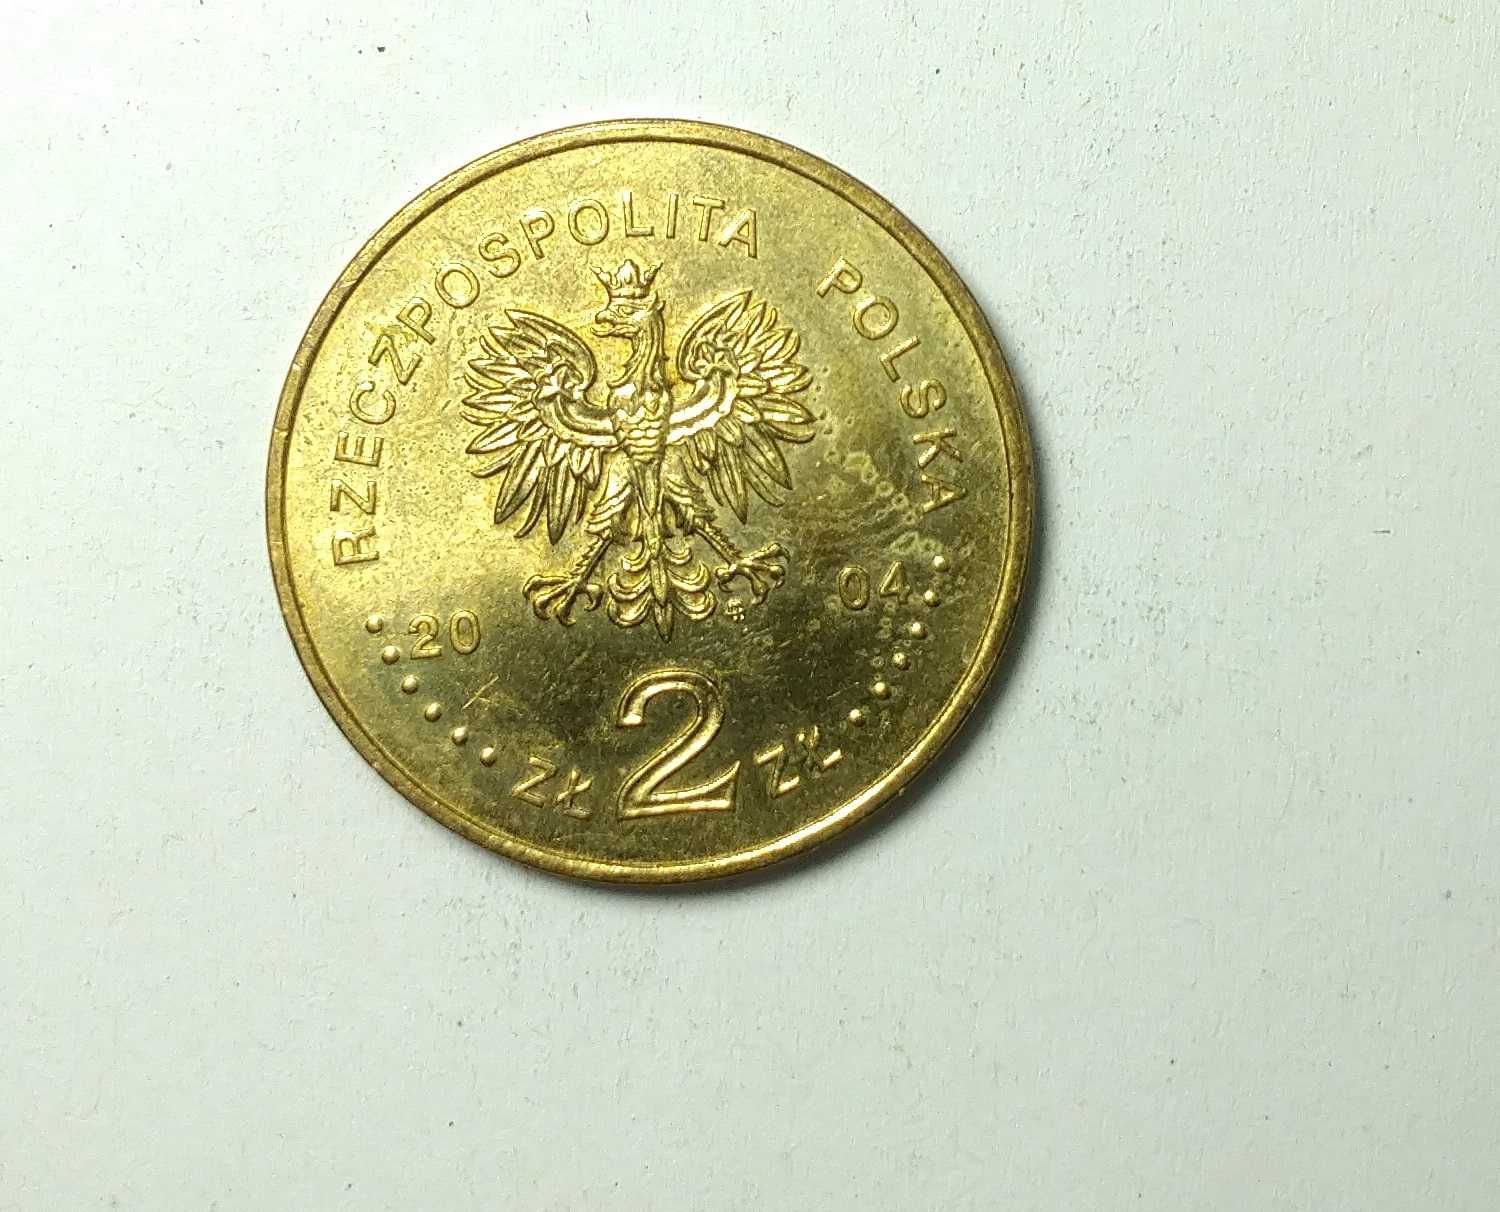 Złote monety 2zł "Kłosy 1 złoty" okolicznościowe, kolekcjonerskie